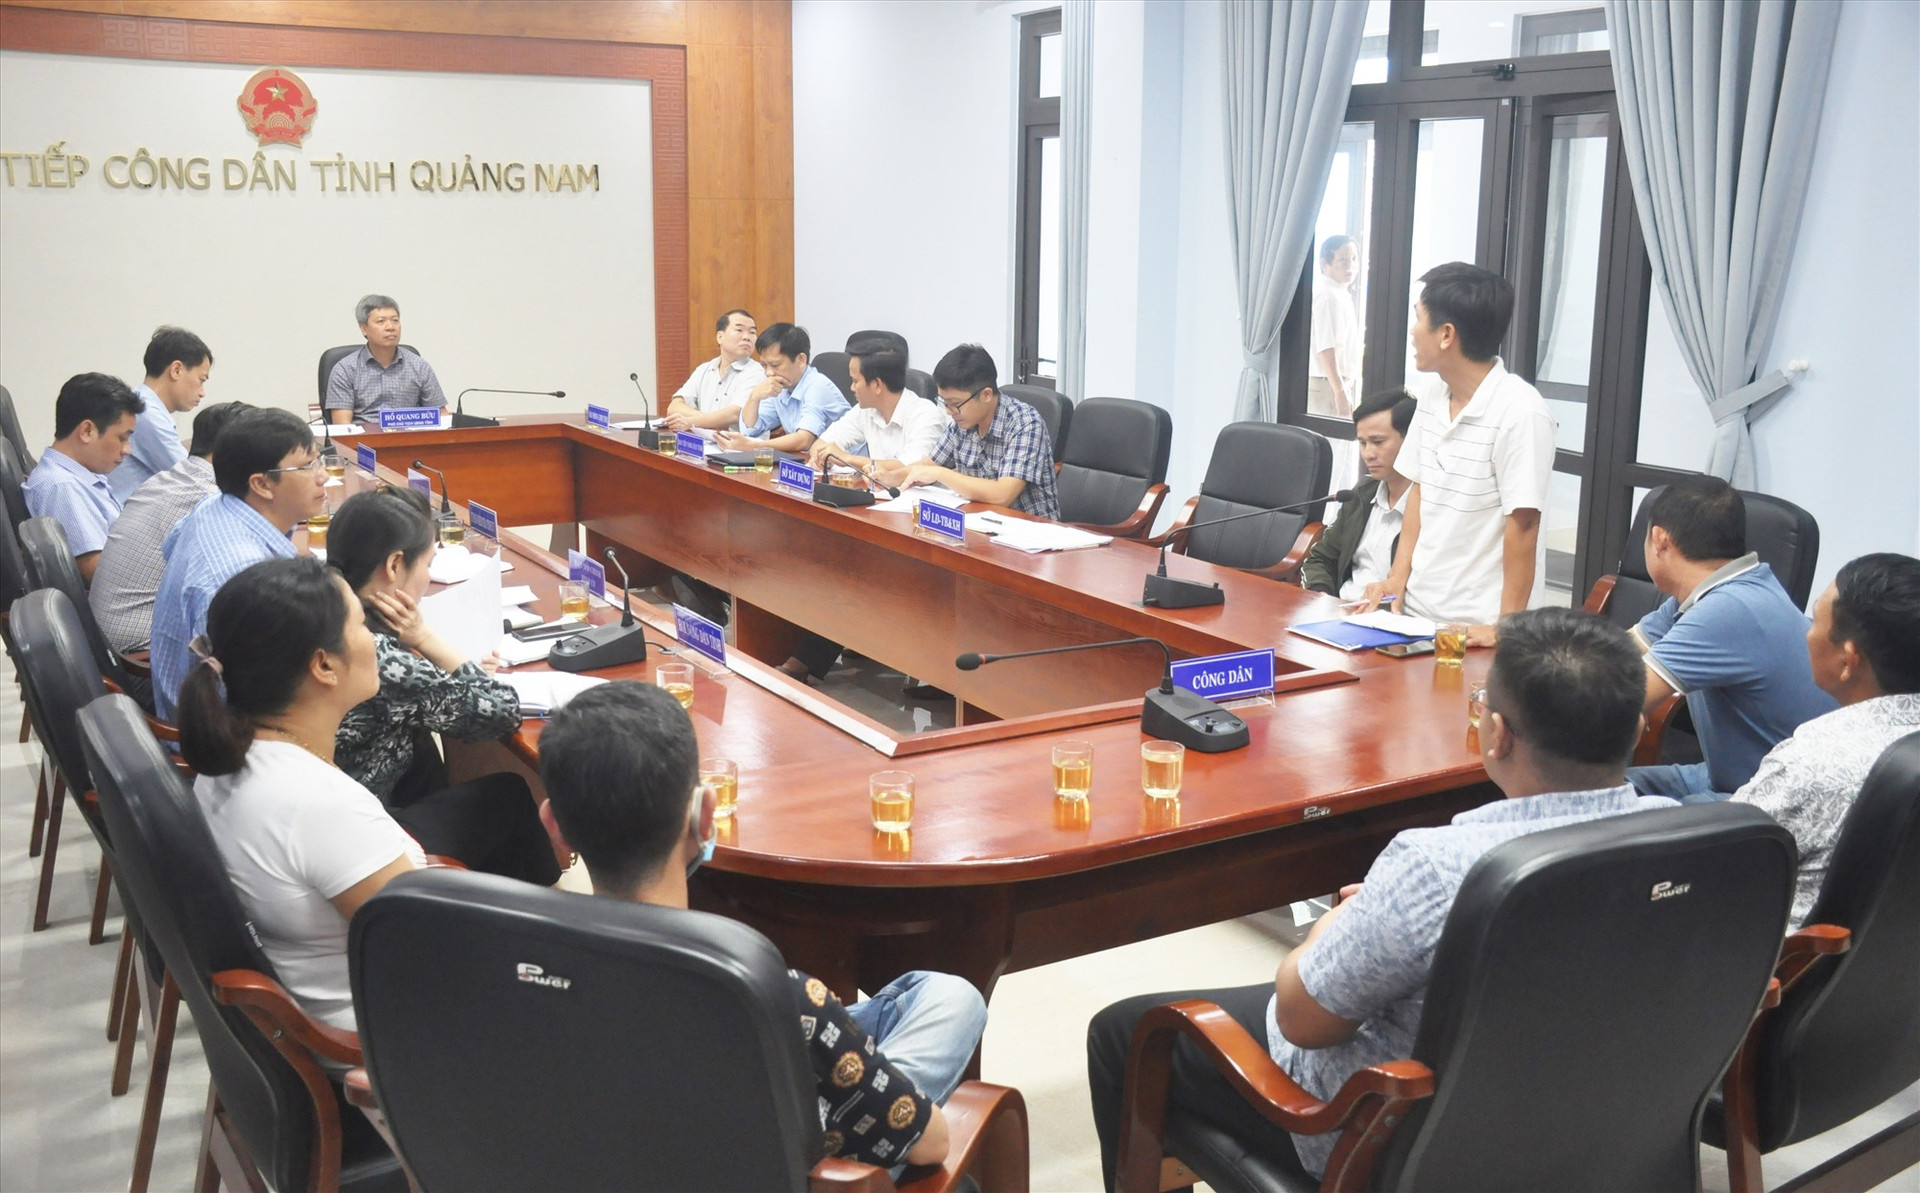 Phó Chủ tịch UBND tỉnh Hồ Quang Bửu tiếp các hộ mua đất nền dự án An Cư 1 của chủ đầu tư Bách Đạt An sáng nay 24.11. Ảnh: N.Đ